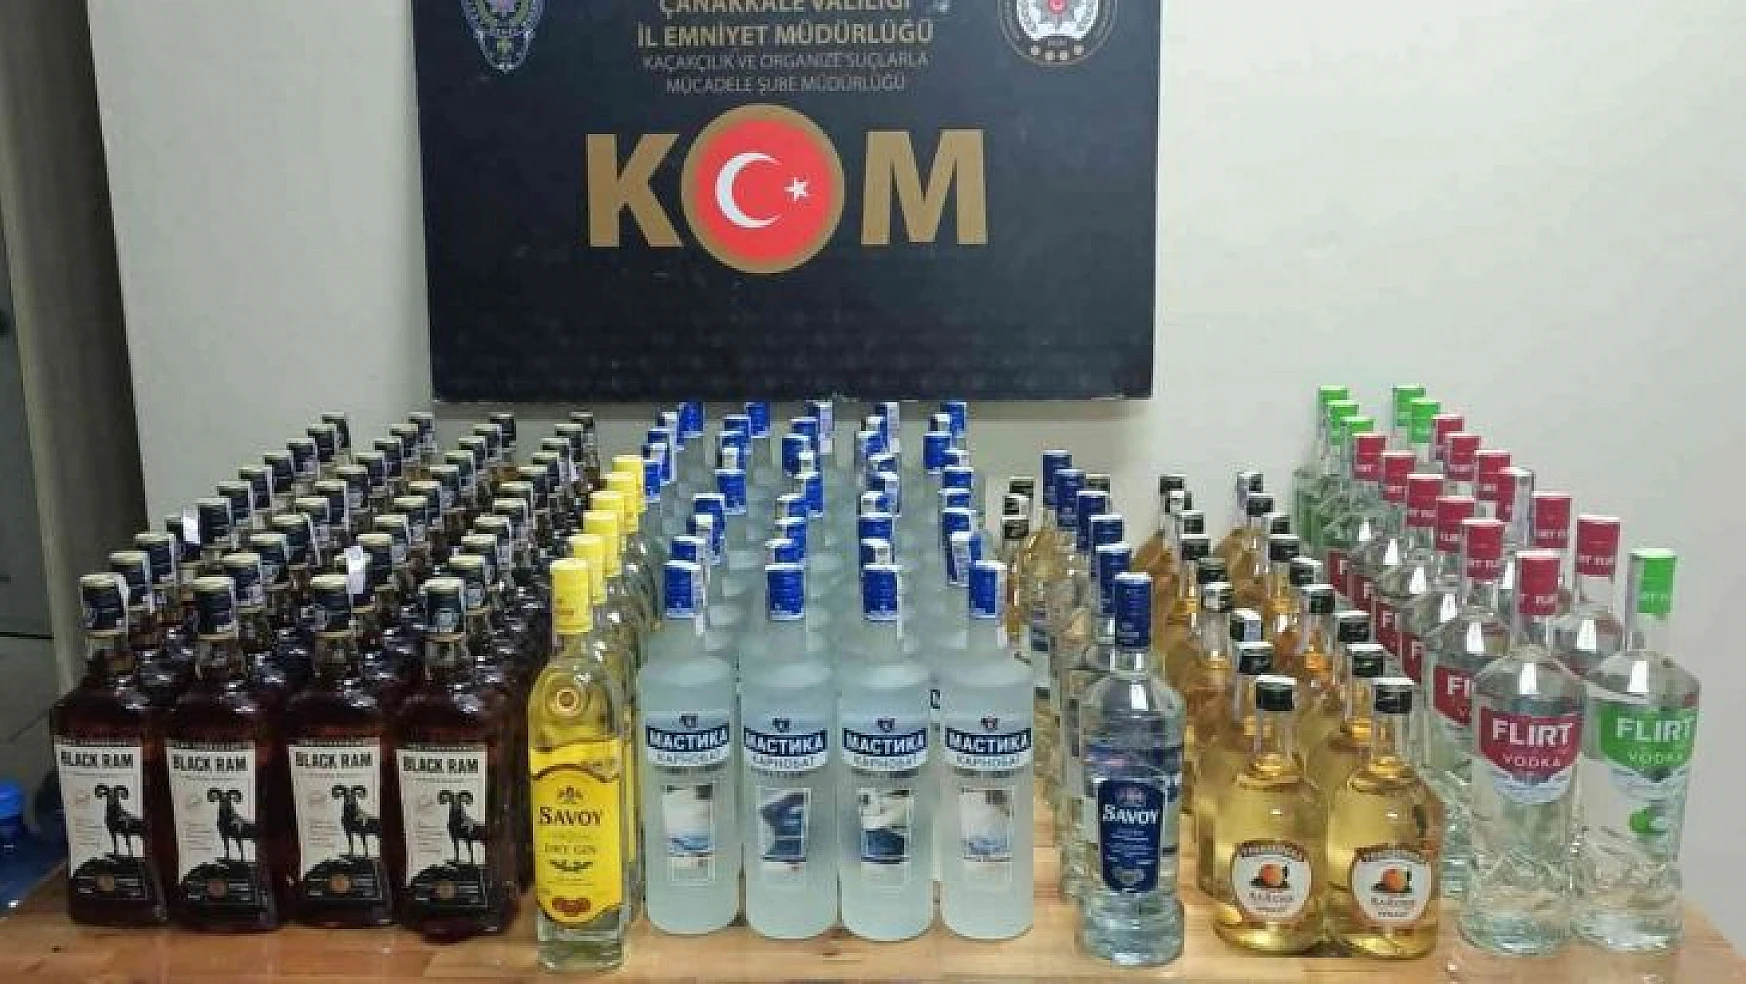 Çanakkale'de 138 şişe kaçak içki ele geçirildi